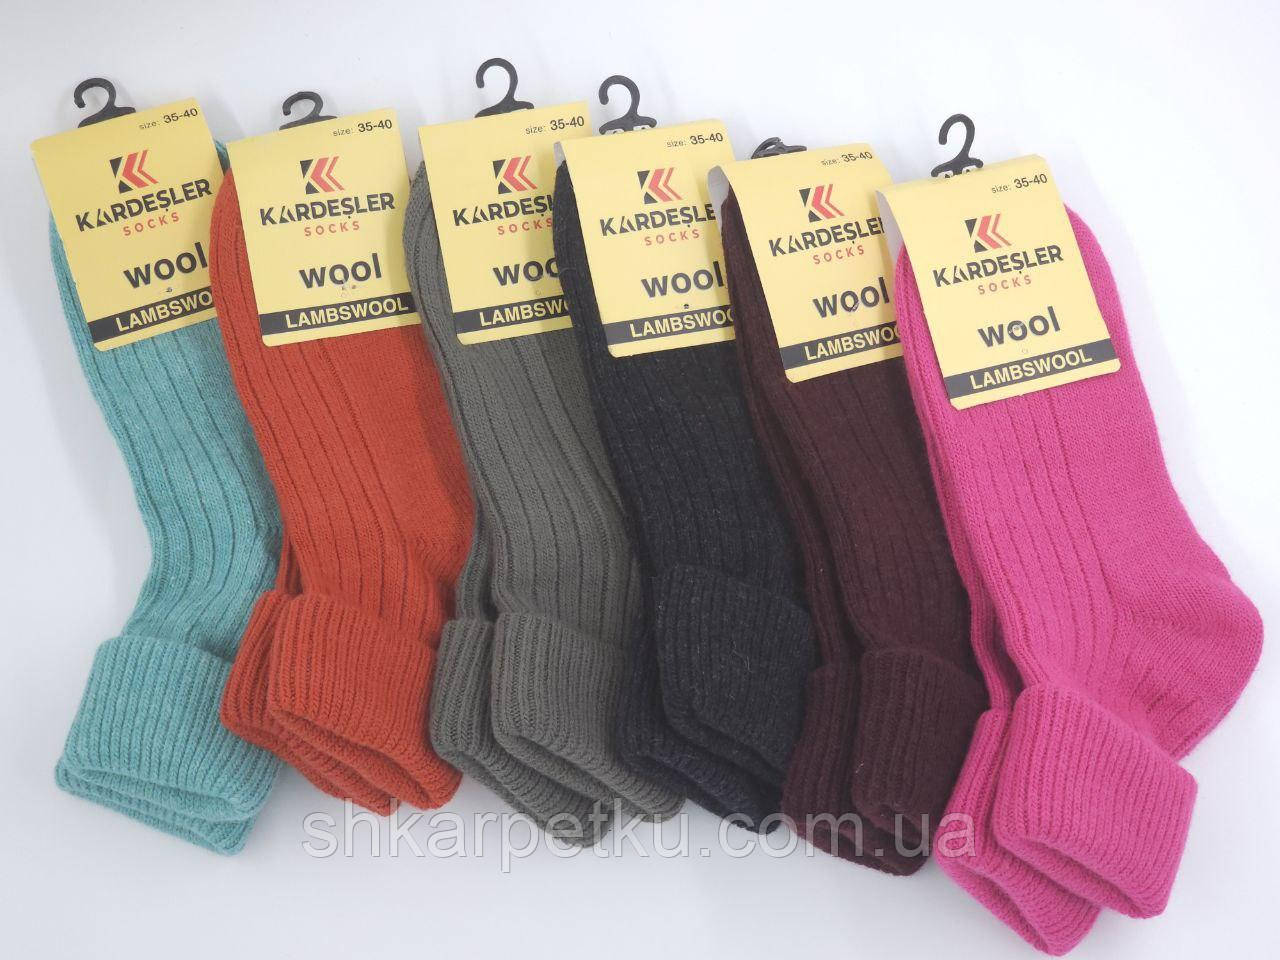 Жіночі шкарпетки Kardesler зимові теплі з відворотом, з вовни лами однотонні. Розмір 35-40, 6пар/уп. мікс кольорів